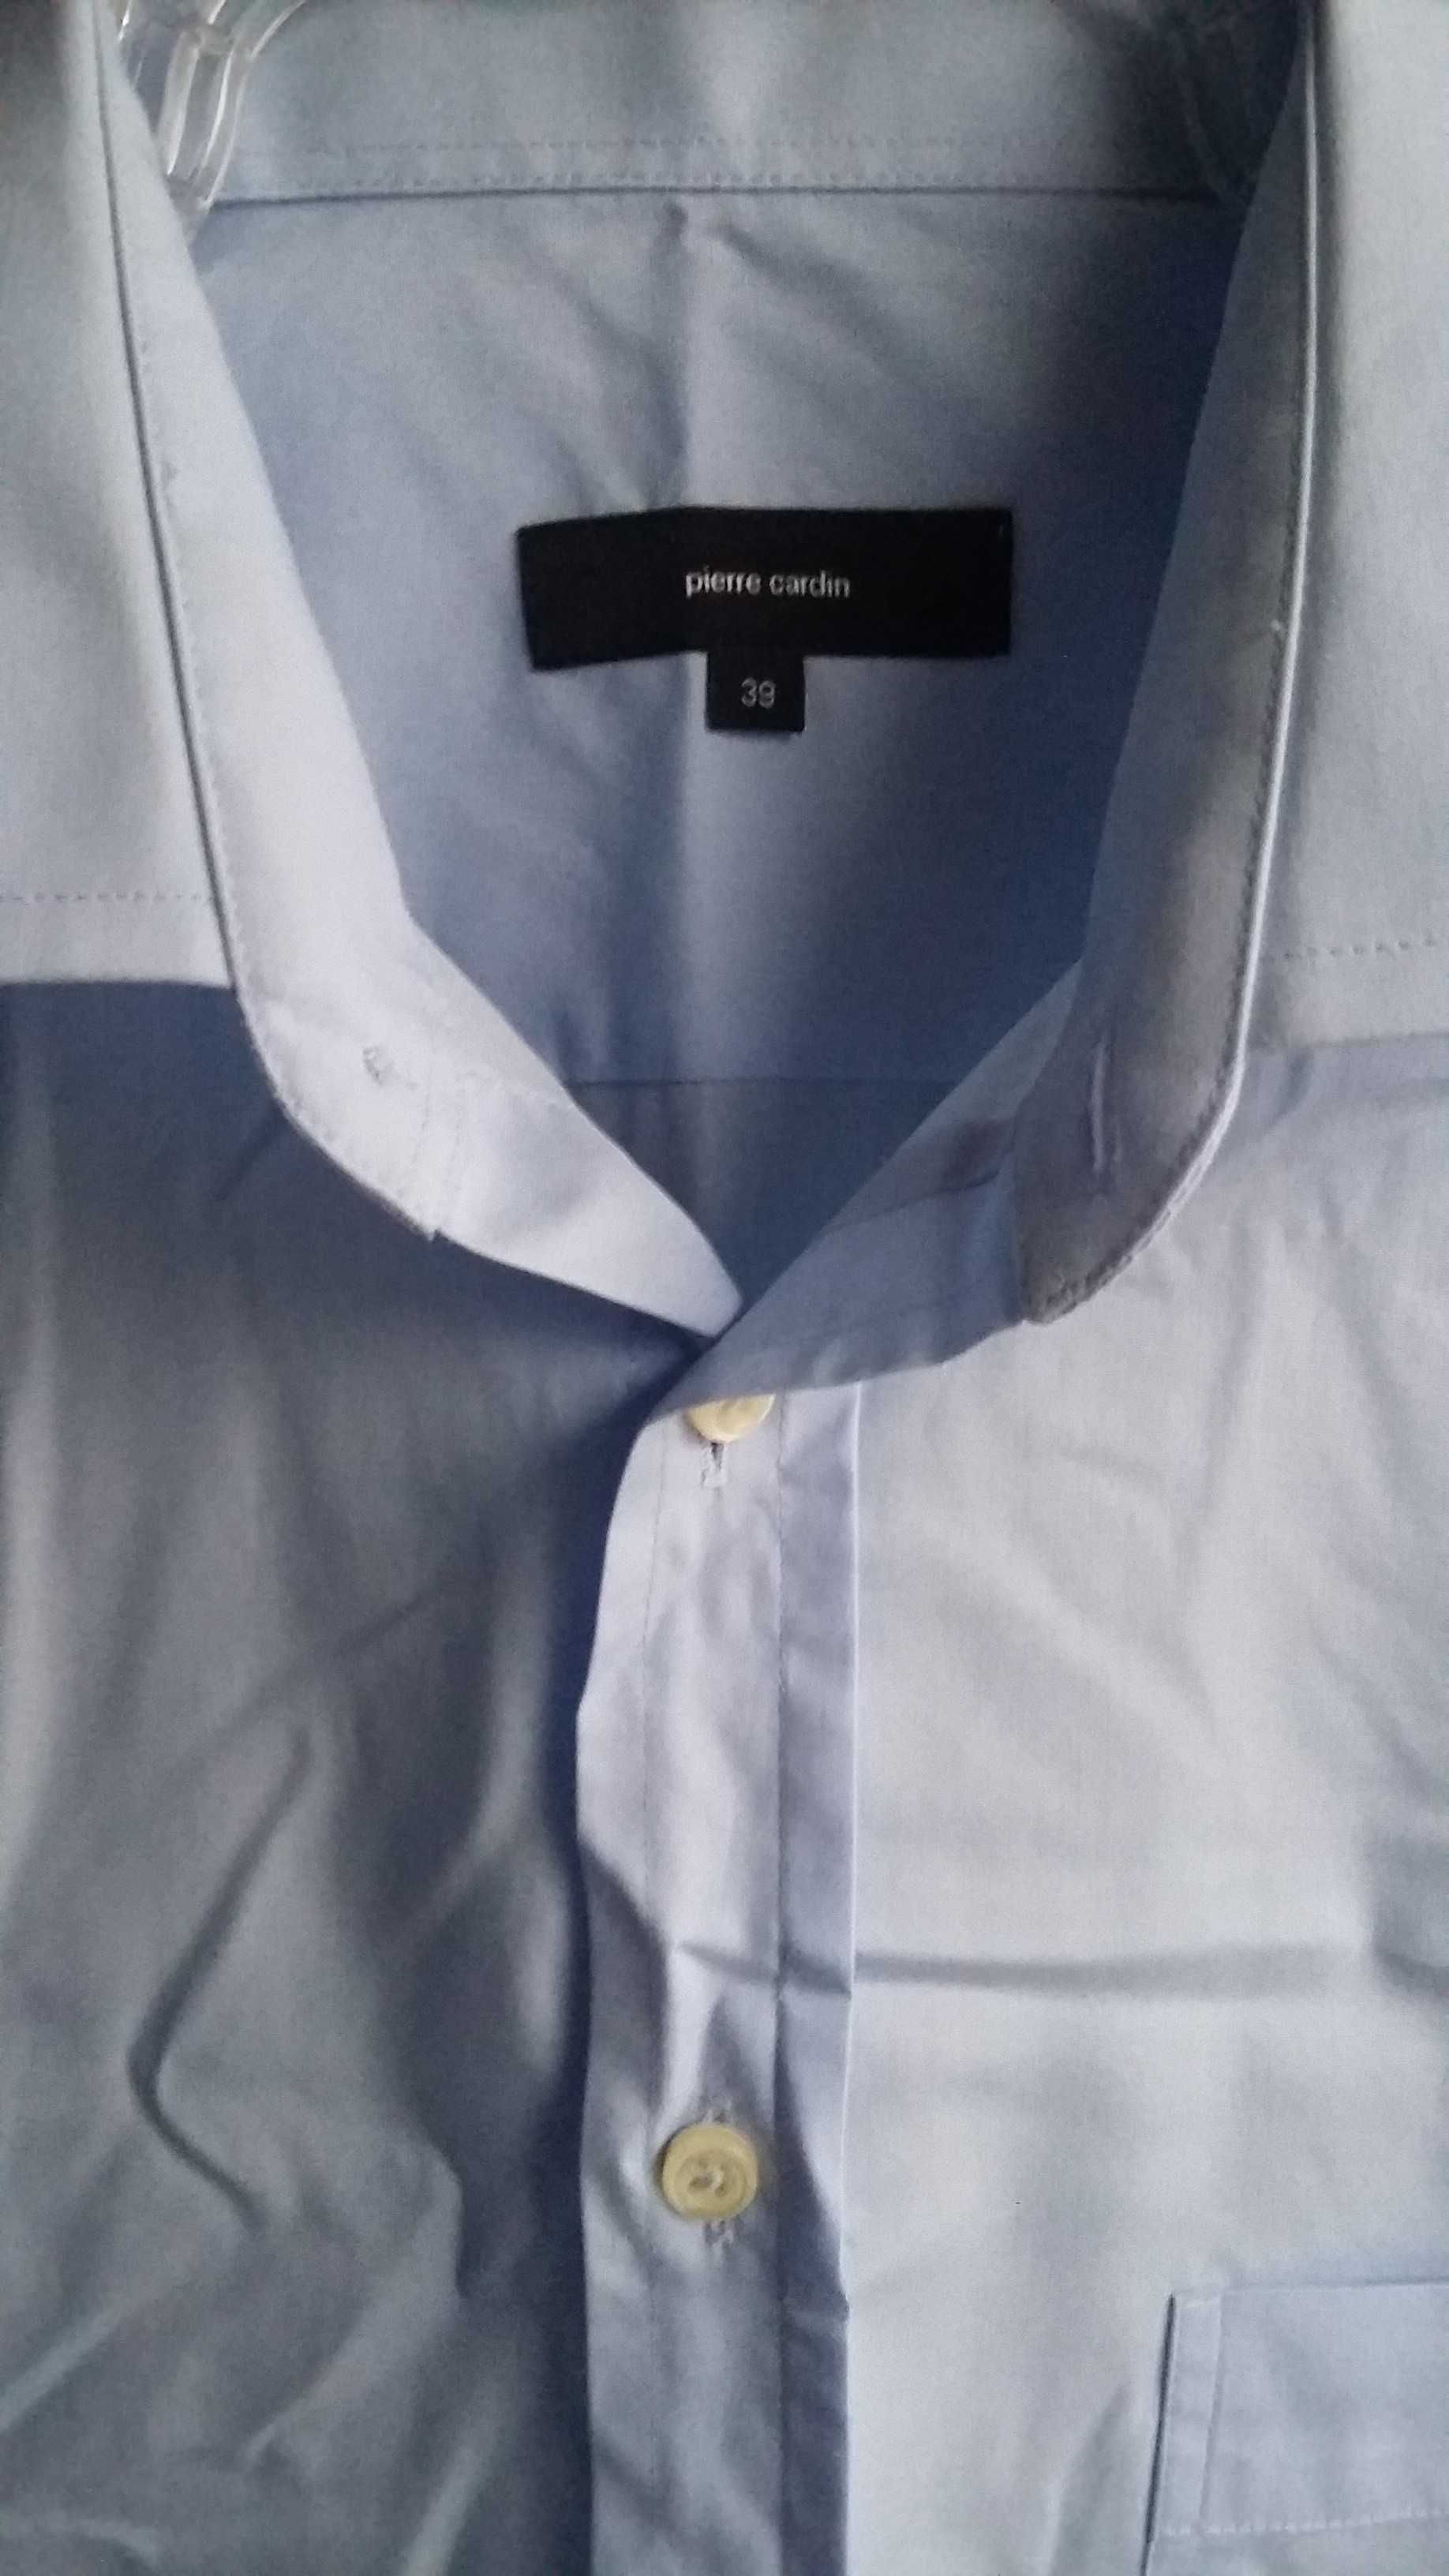 Koszula wizytowa błękitna Pierre Cardin, rozmiar 39